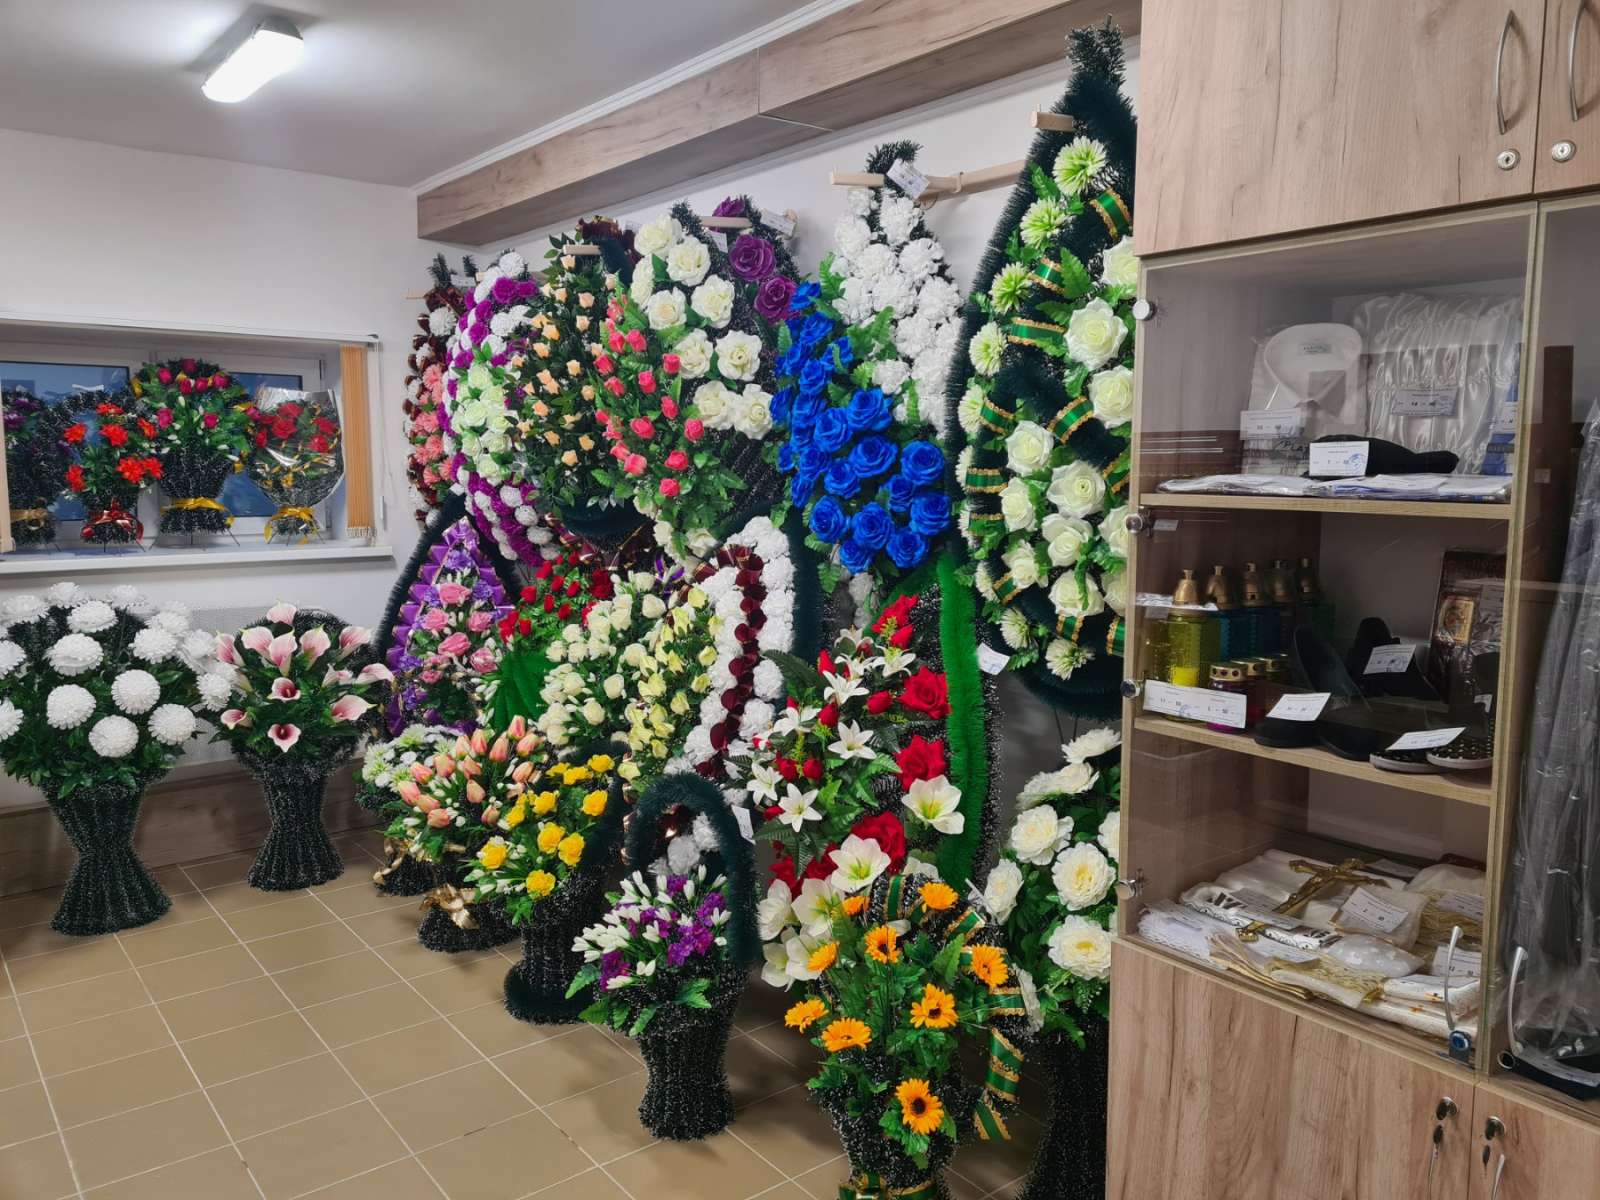 Магазин ритуальных услуг и товаров в Борисове, венки гробы кресты